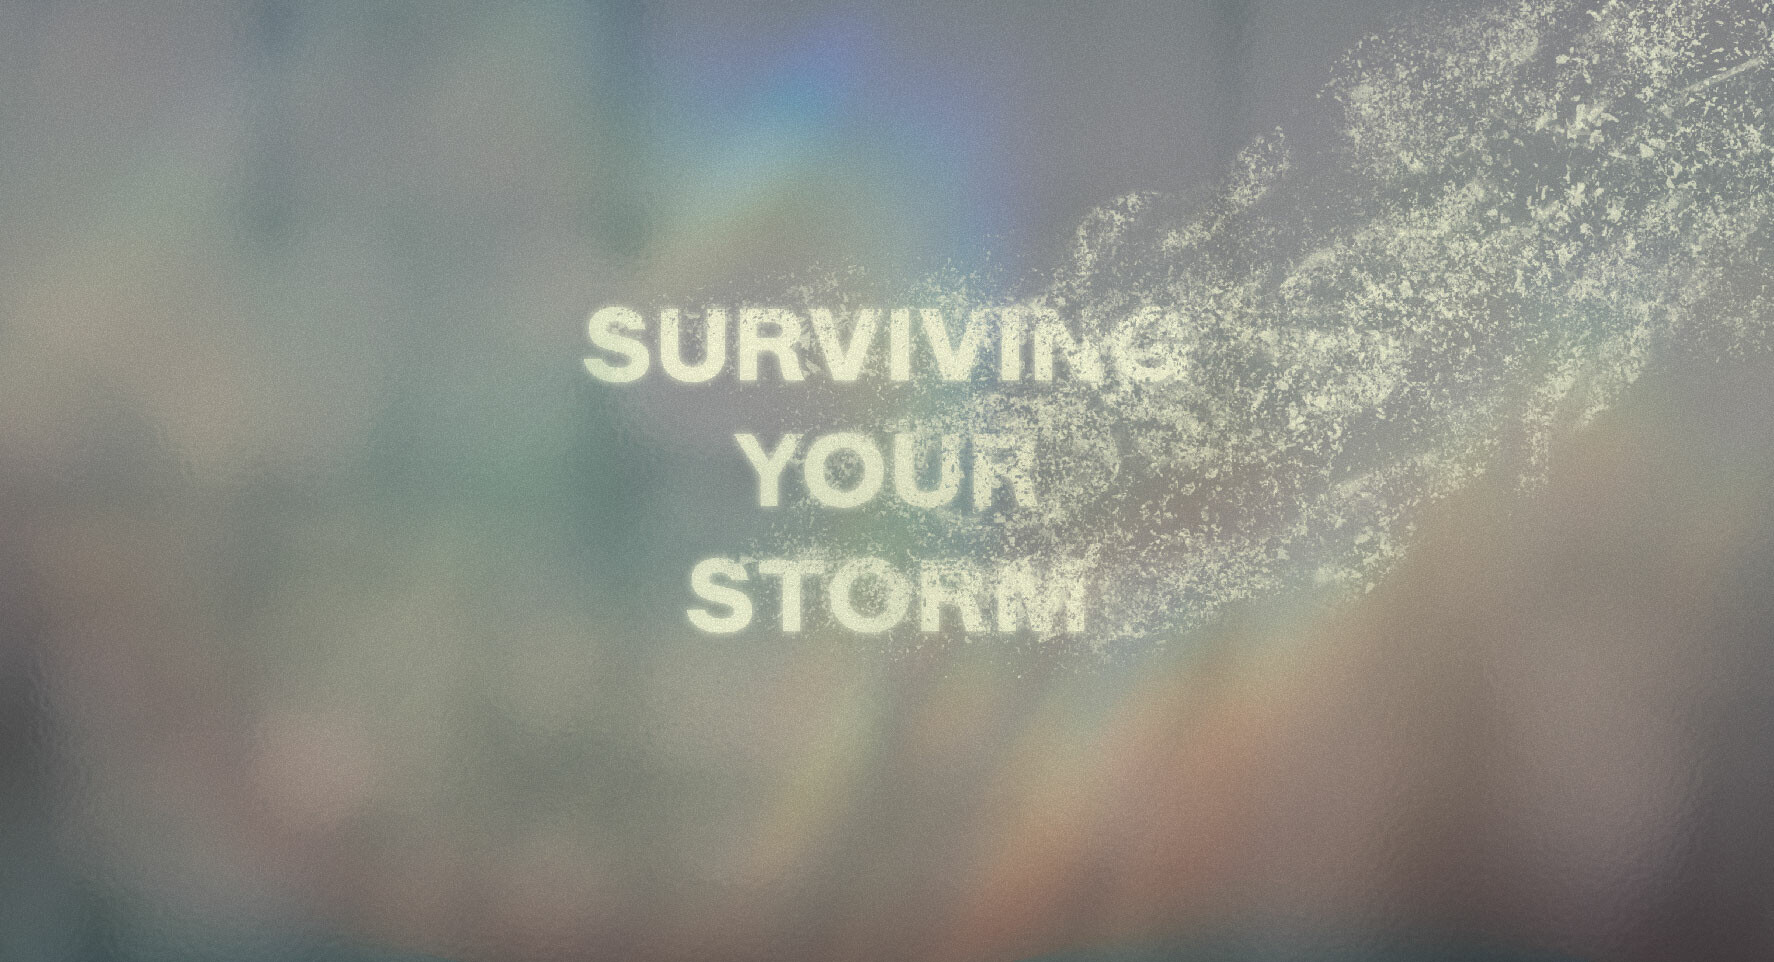 Surviving Your Storm